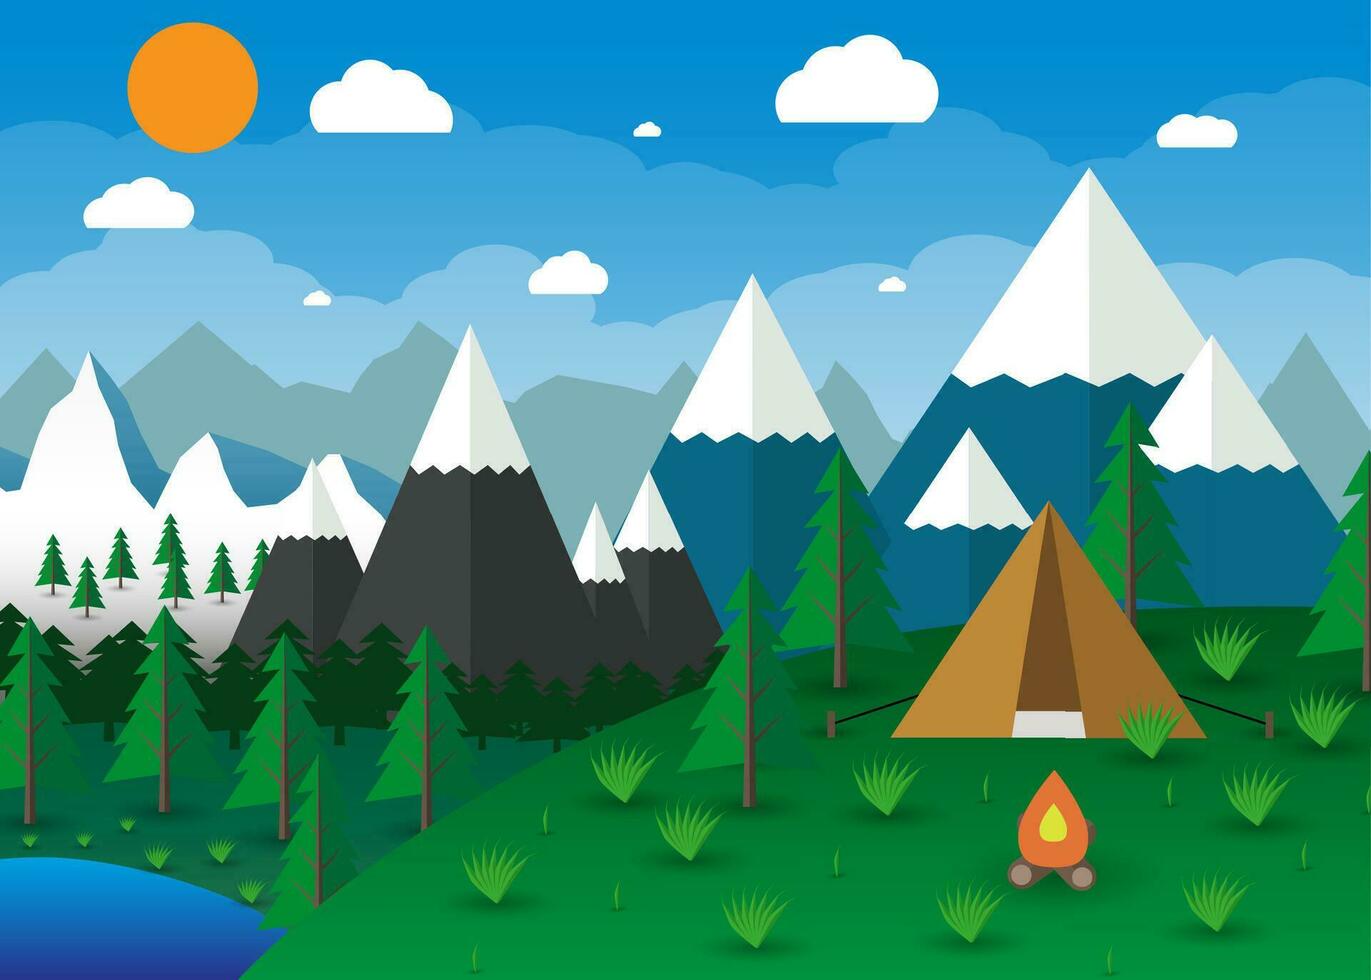 zomer camping met een kampvuur, meer, Woud, bergen, lucht, wolken, zon. reizen en vakantie concept. vector illustratie in vlak ontwerp